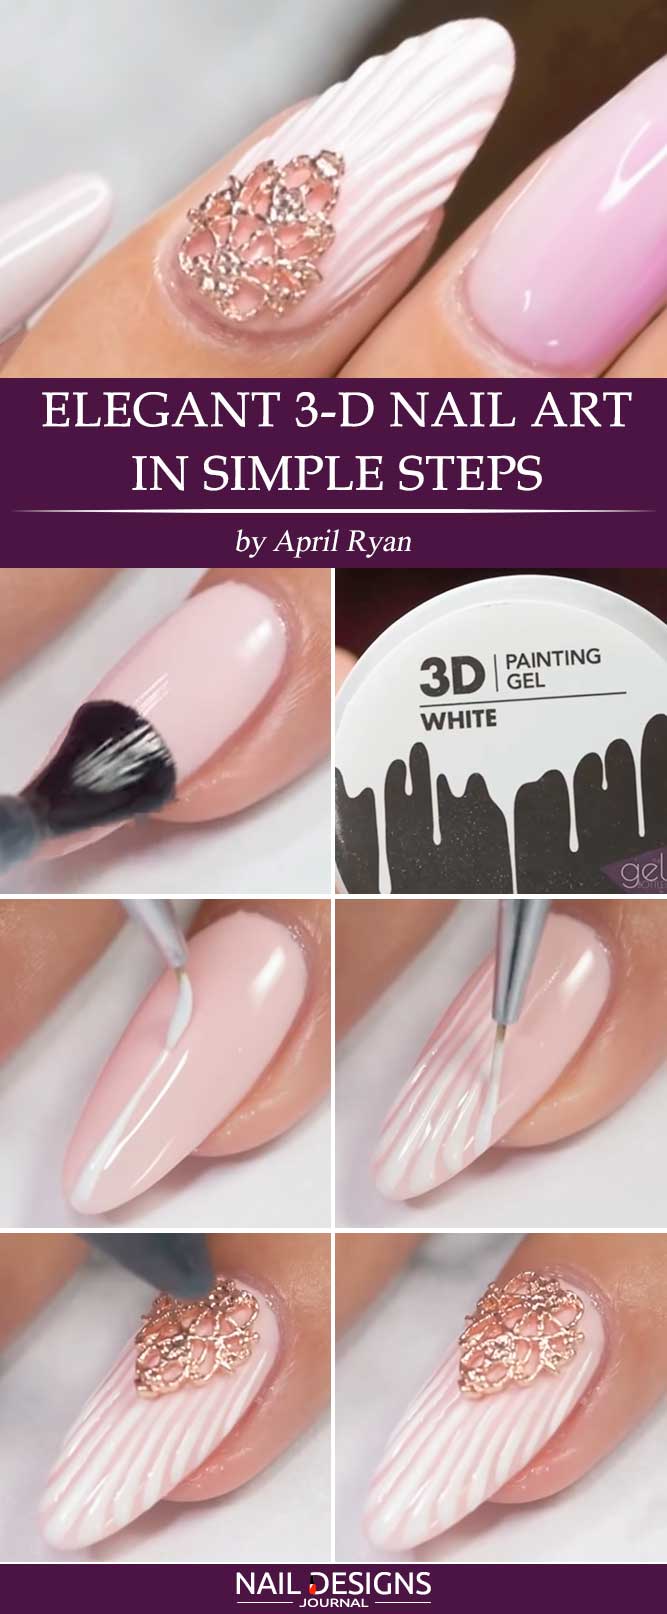 Elegant 3-D Nail Art in Simple Steps